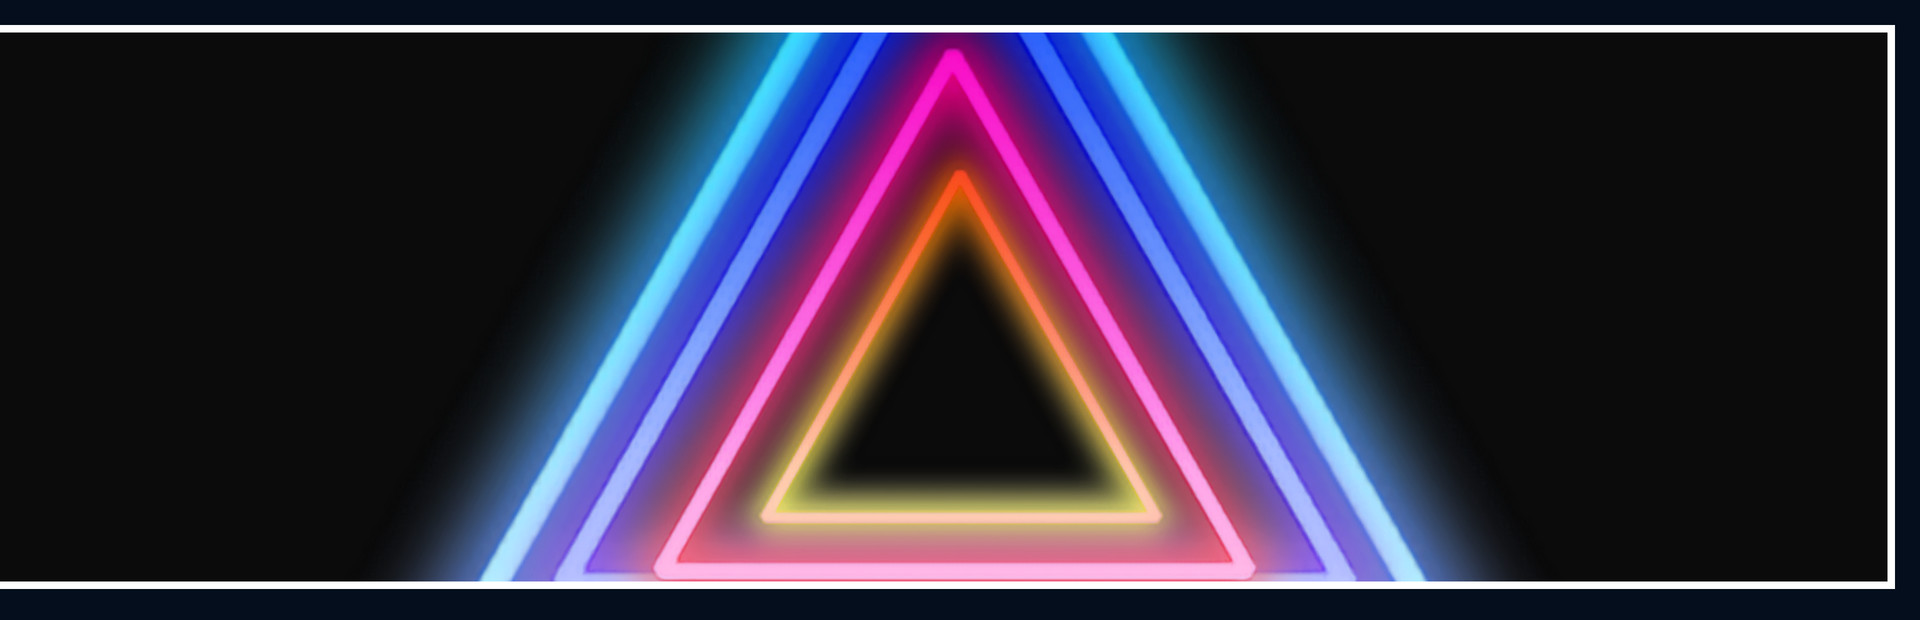 Neon Universe cover image